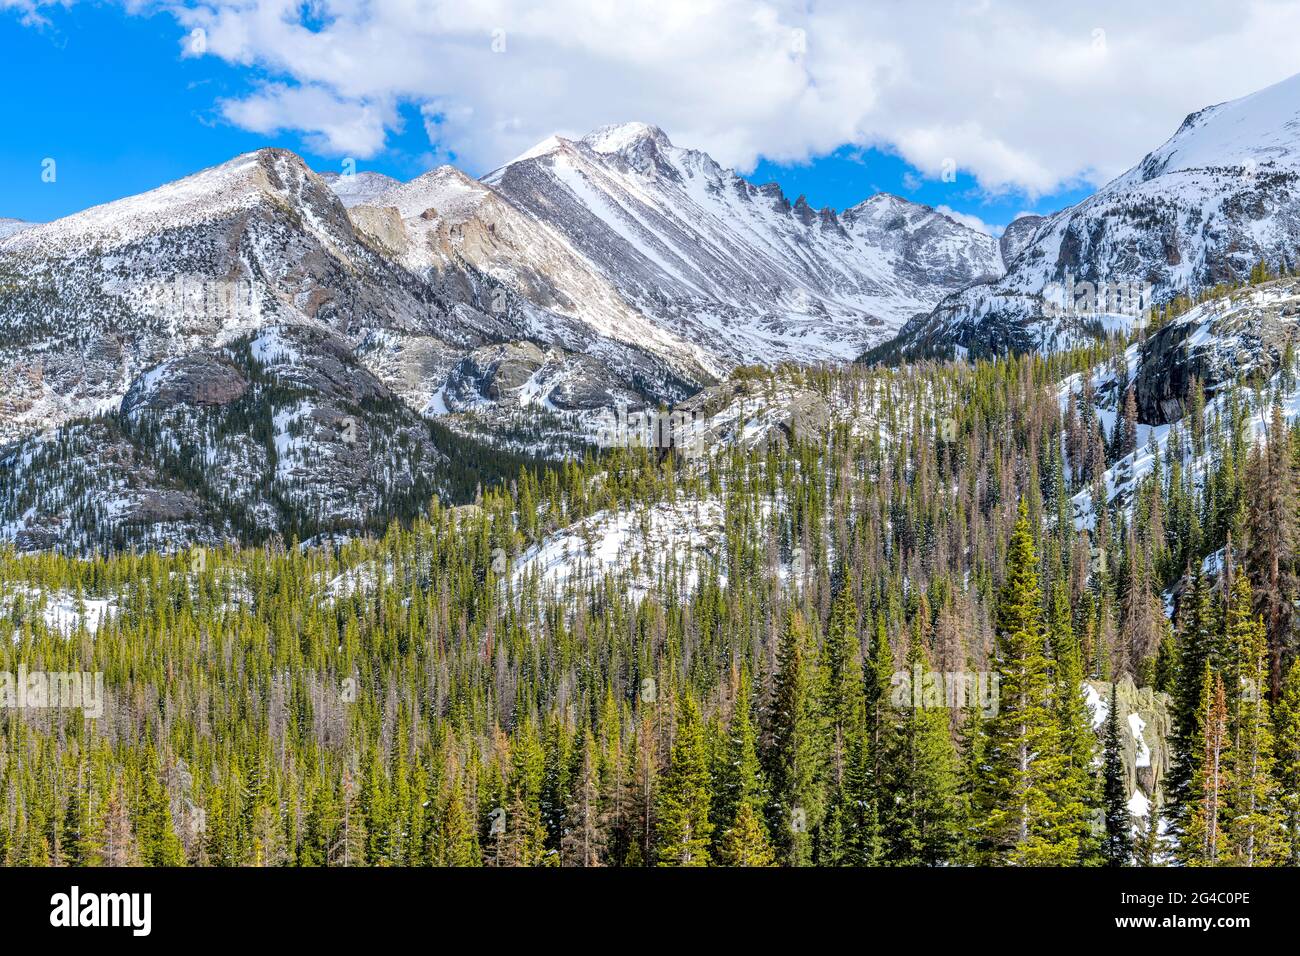 Long Peak - UNE vue ensoleillée de la journée du printemps sur les gorges accidentées de longs Peak et de Glacier gorge, vue depuis Emerald Lake Trail, dans le parc national de Rocky Mountain, Colorado, États-Unis. Banque D'Images